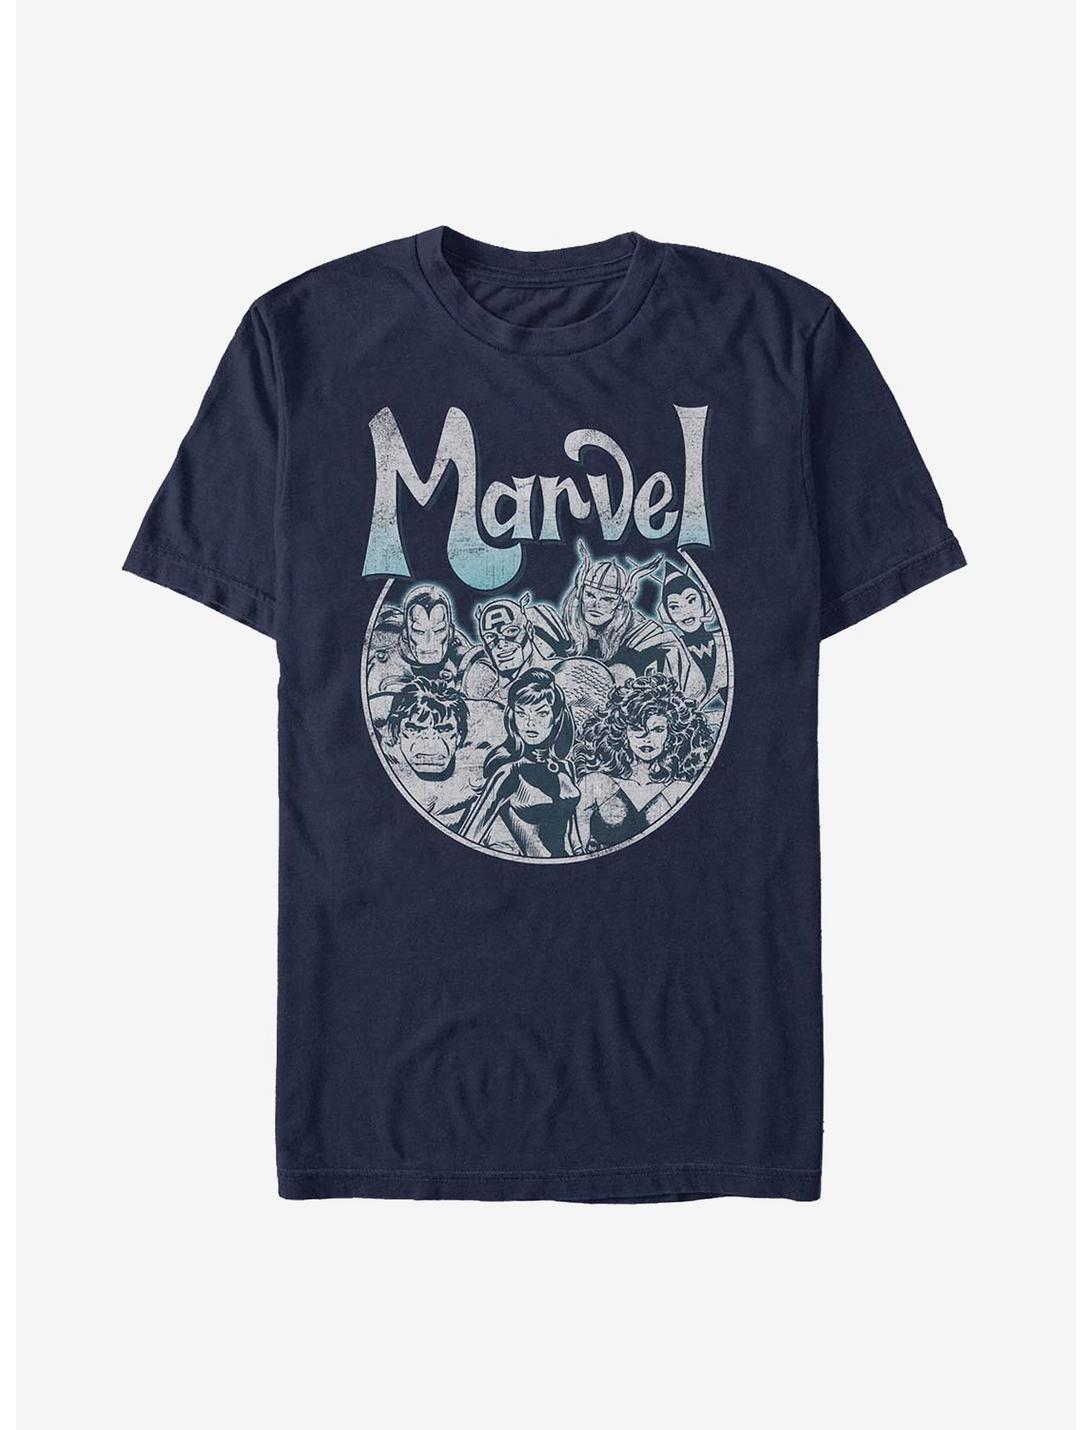 Marvel Avengers Marvel Avengers Rock T-Shirt, NAVY, hi-res